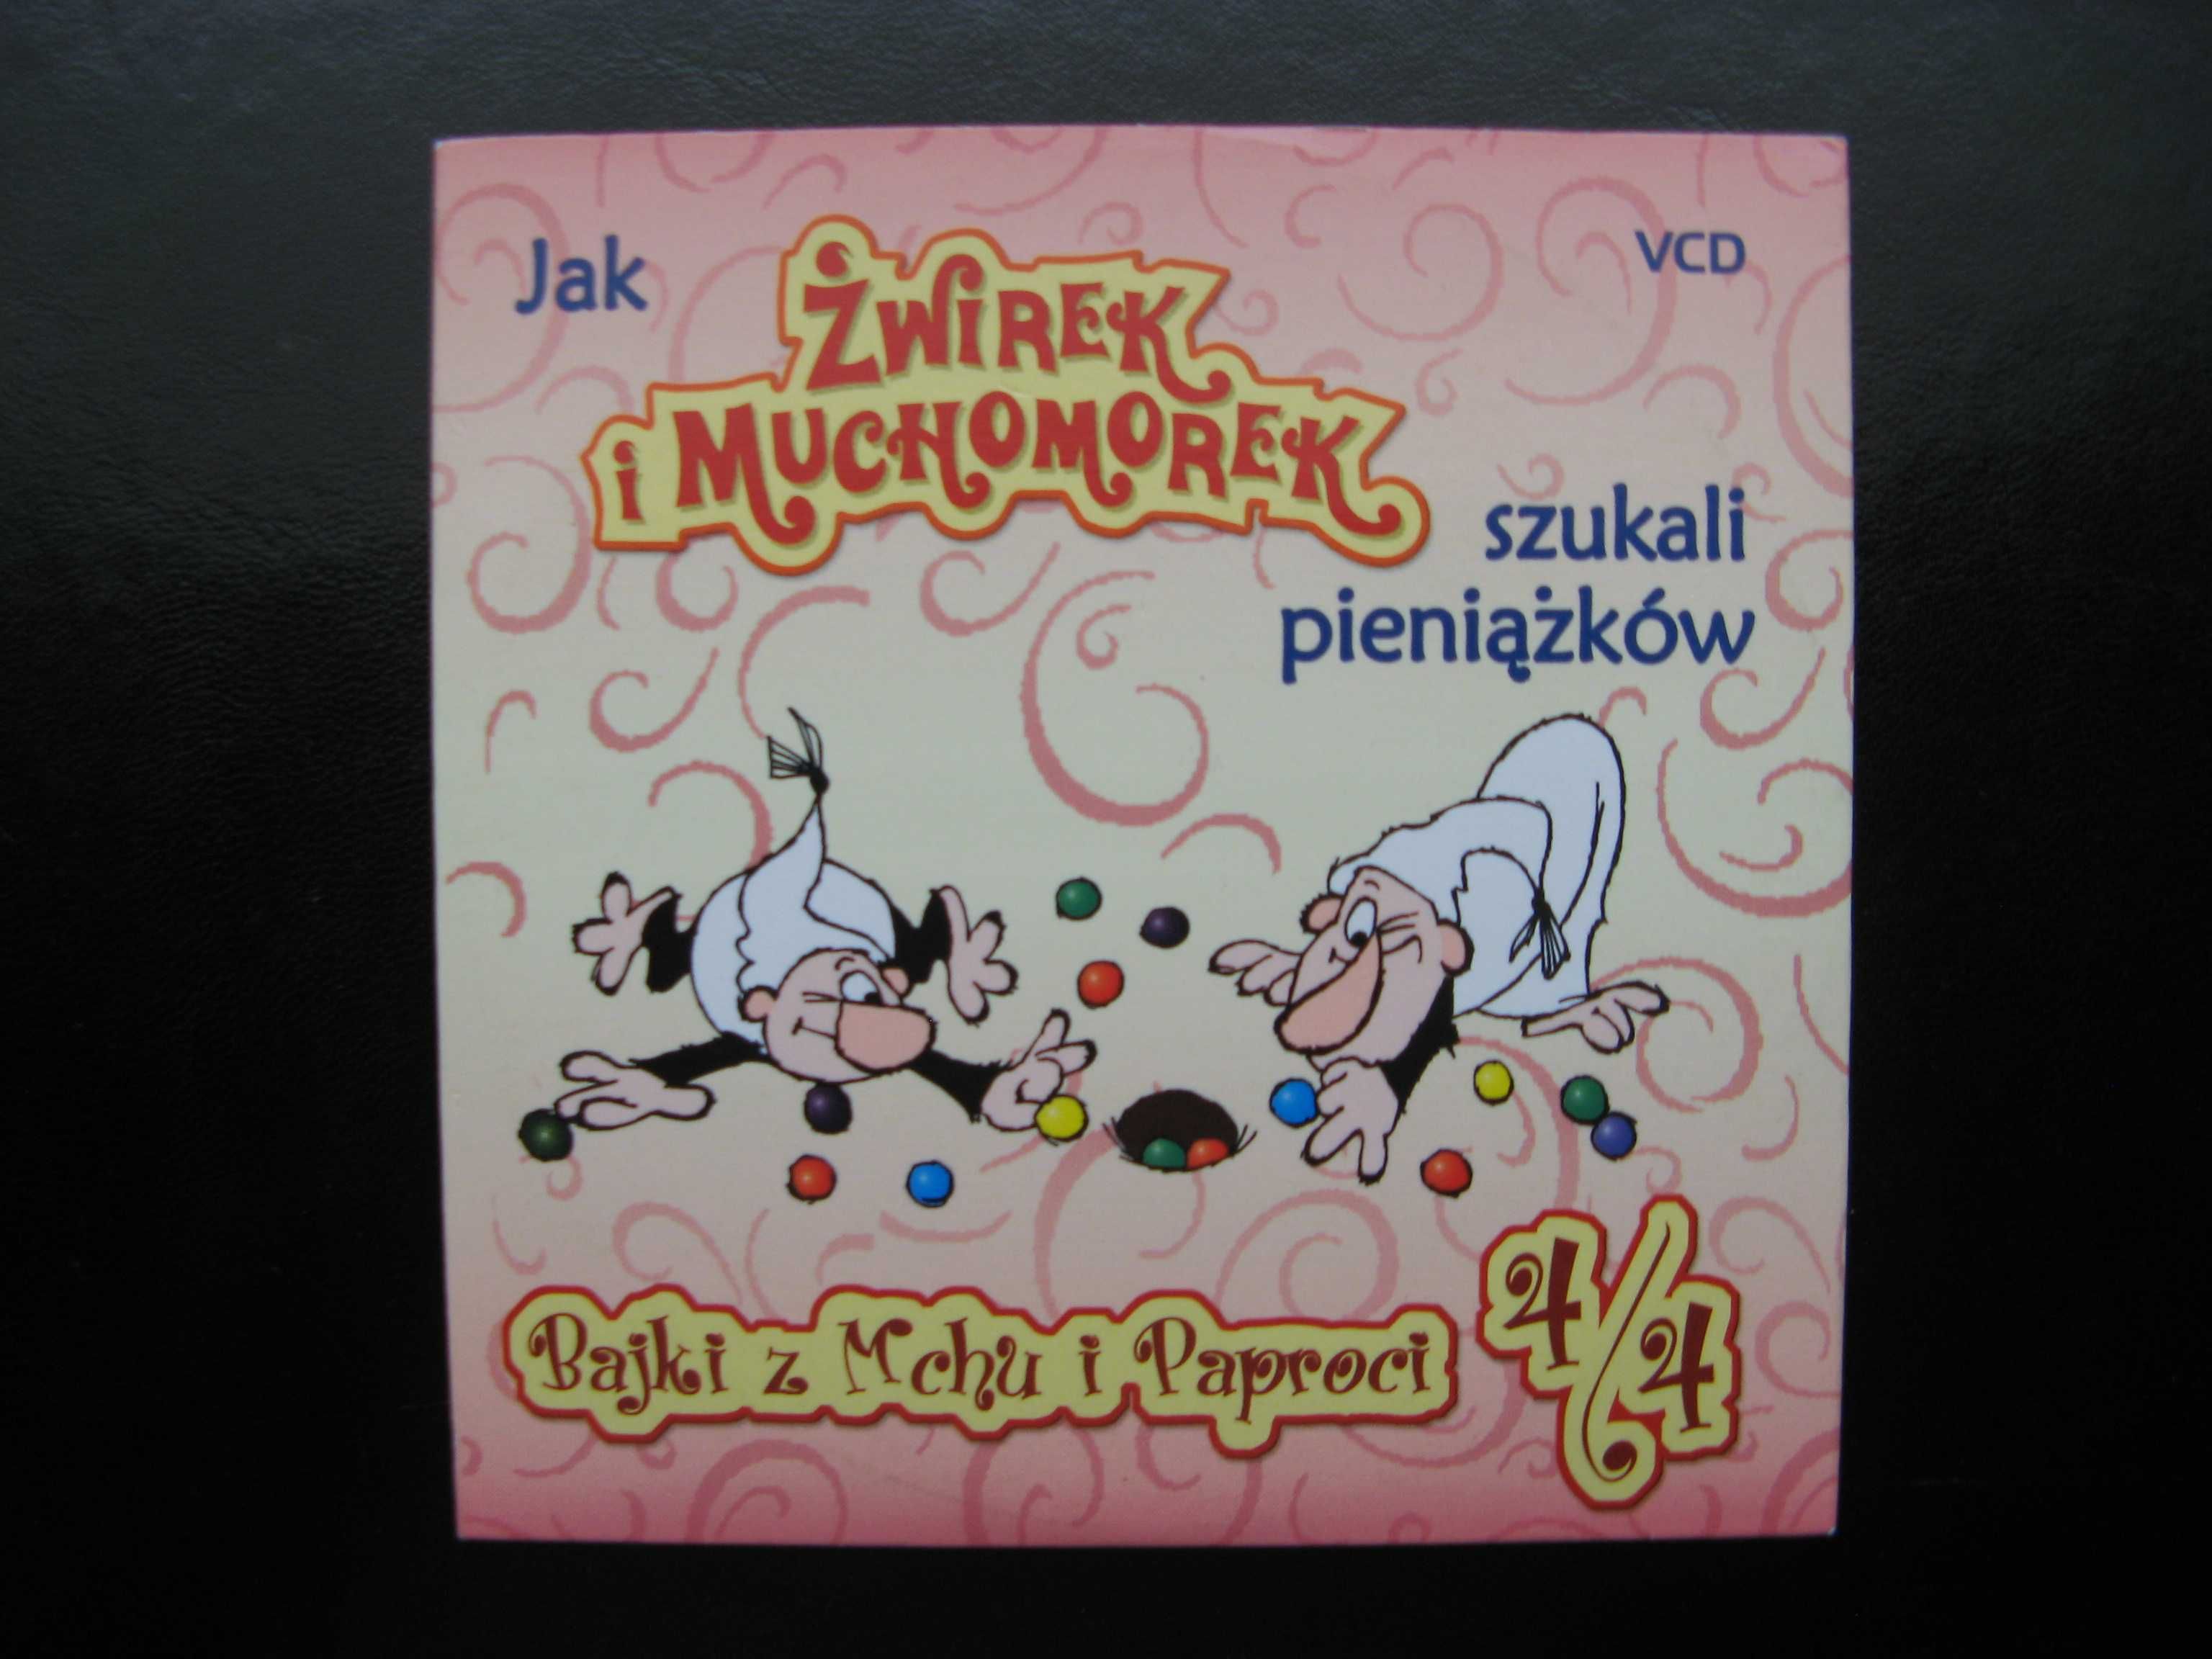 Bajki z Mchu i Paproci: Żwirek i Muchomorek, polski dubbing